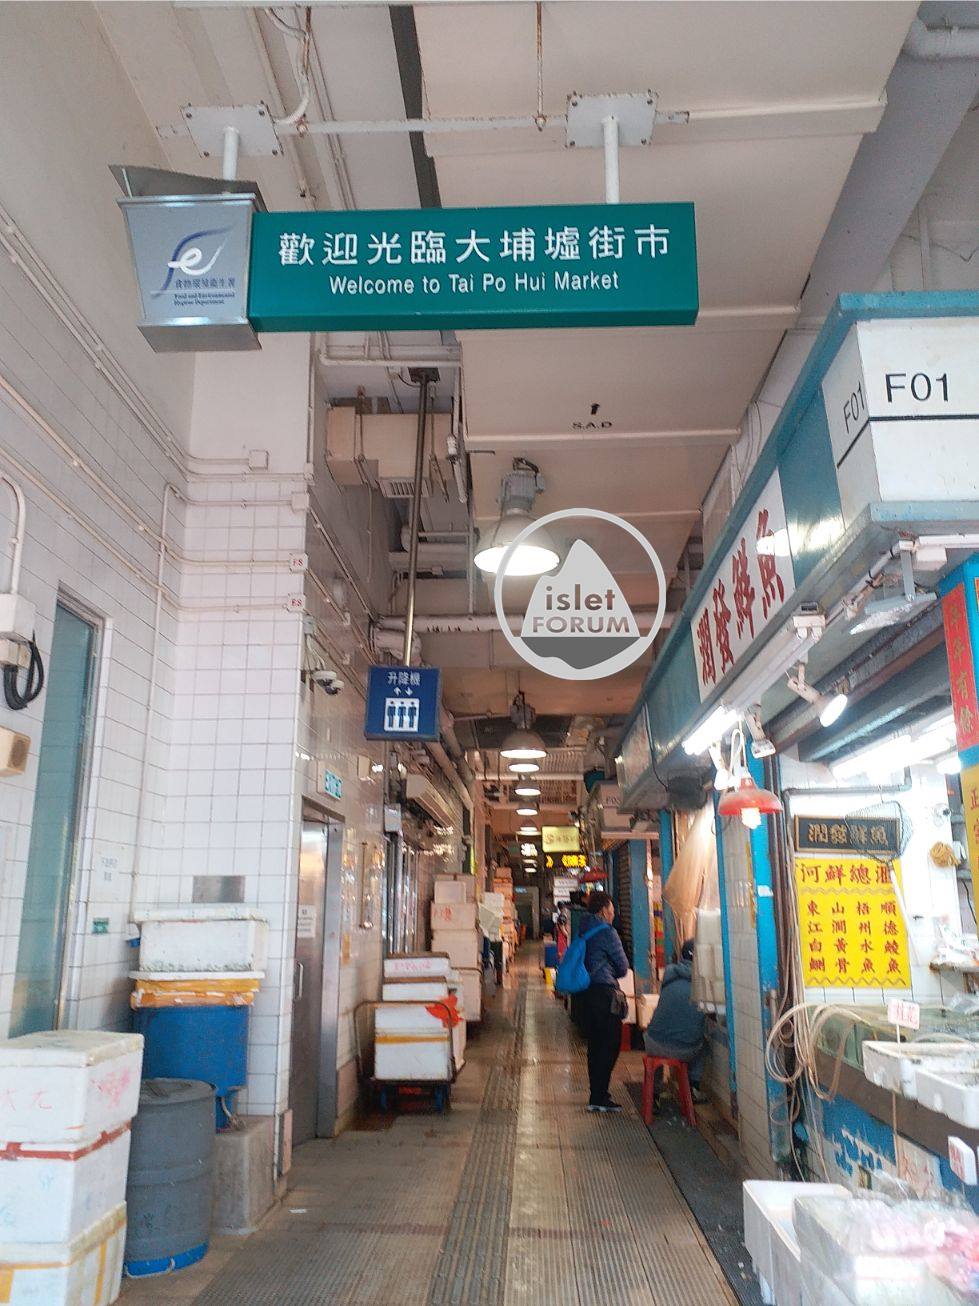 大埔墟街市 (11) tai po hui market.jpg